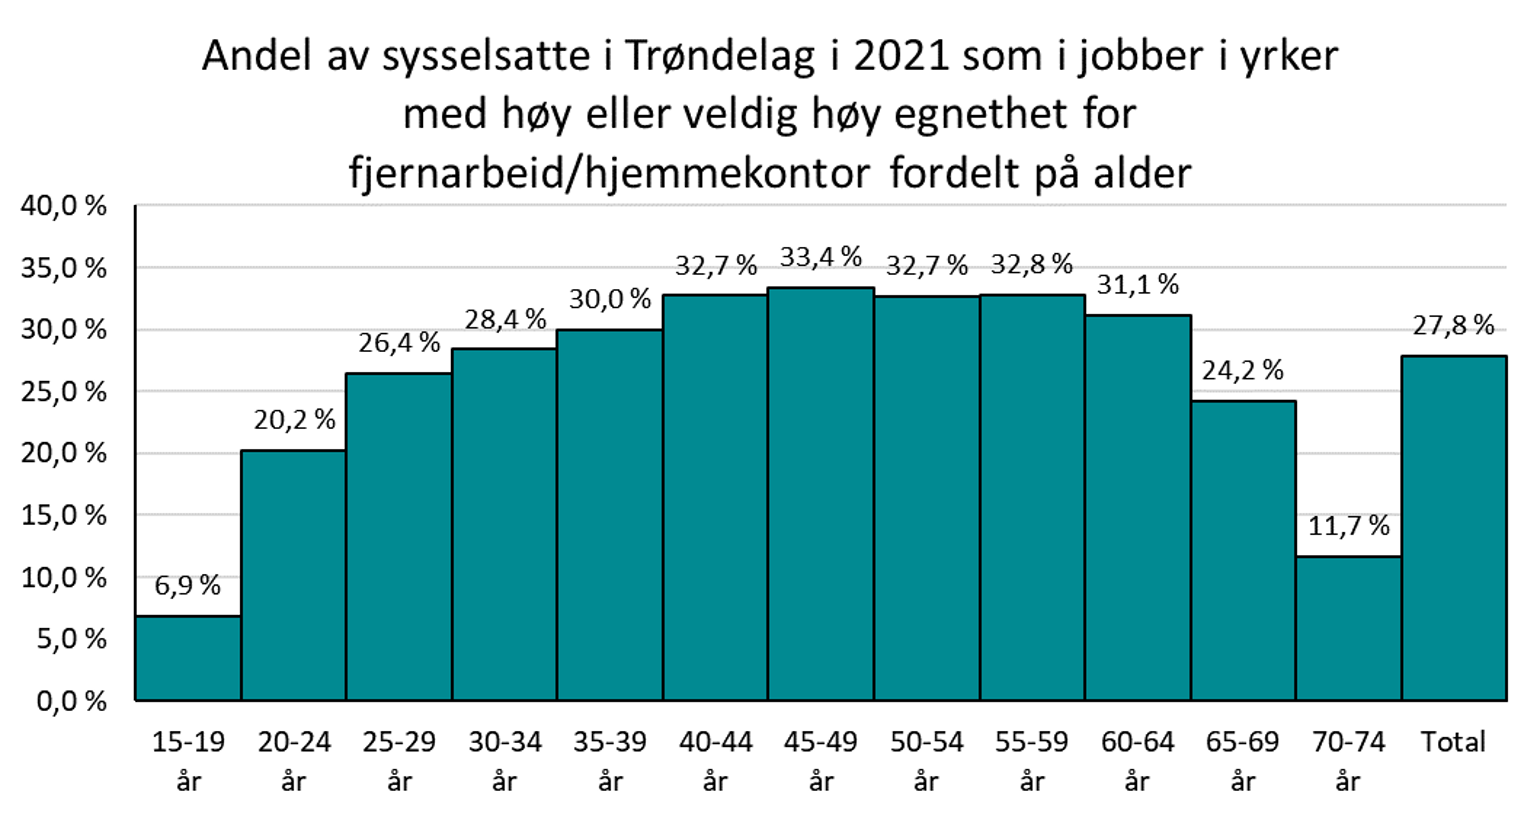 Andel av sysselsatte i Trøndelag i 2021 som i jobber i yrker med høy eller veldig høy egnethet for fjernarbeid eller hjemmekontor fordelt på alder